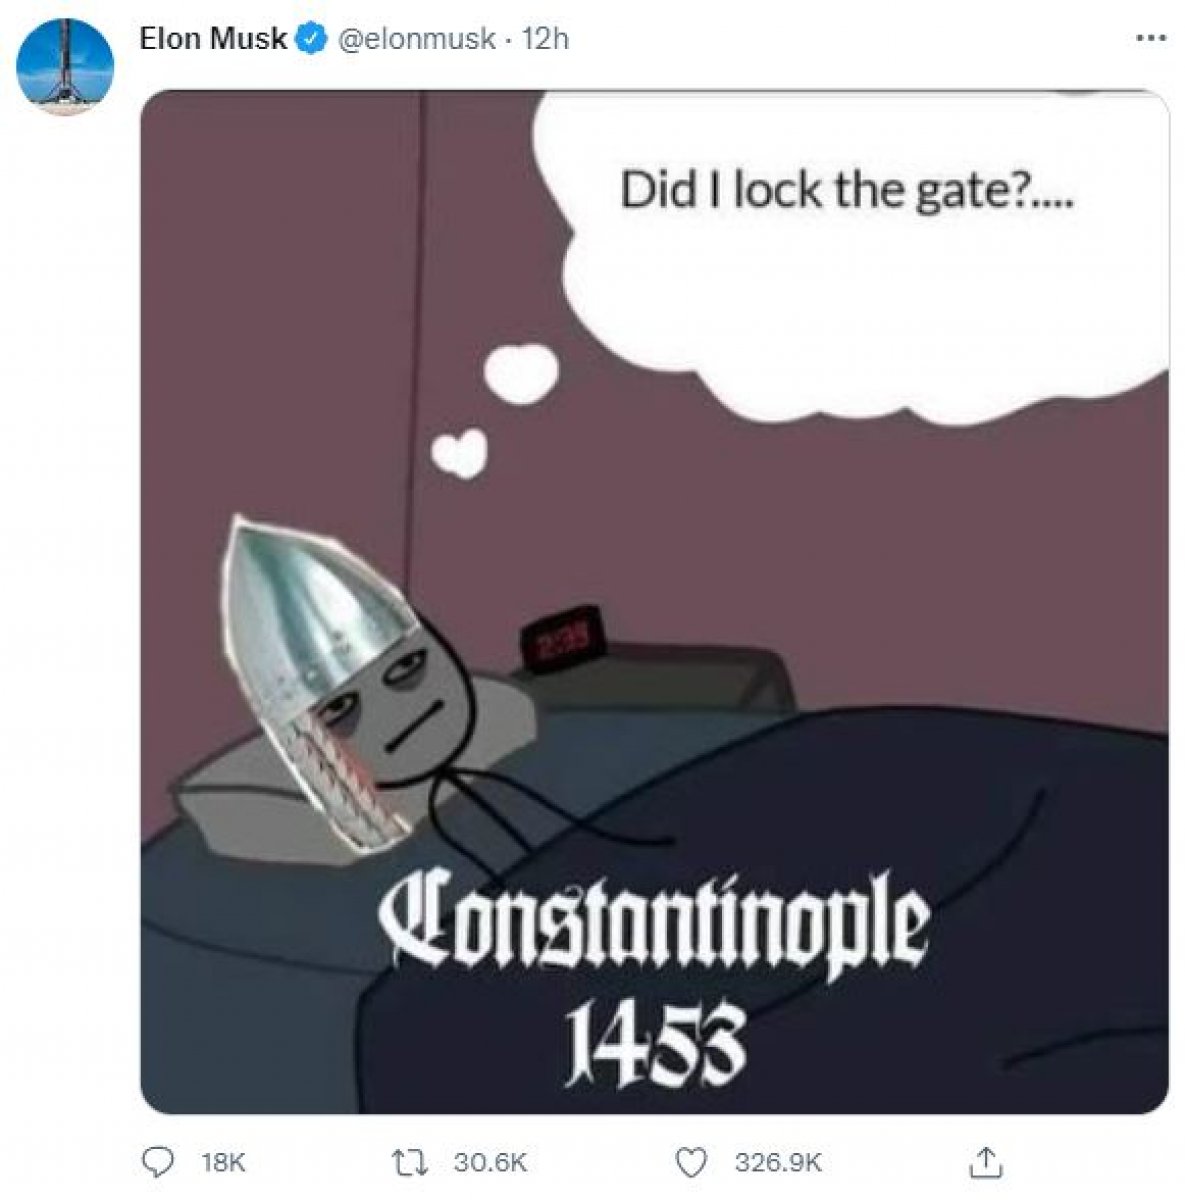 Elon Musk'ın 1453 paylaşımının anlamı ortaya çıktı